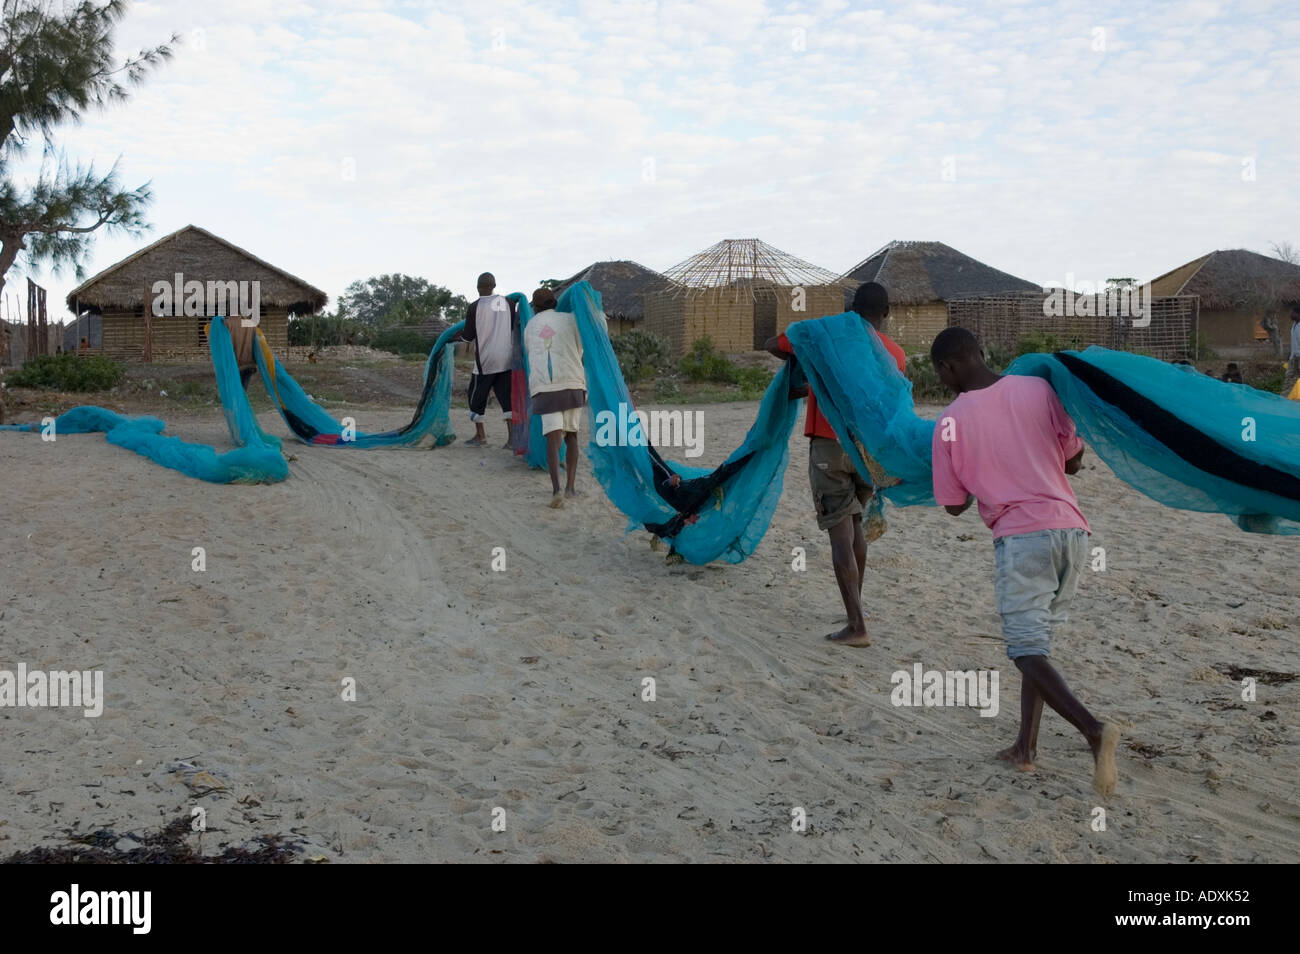 Les pêcheurs Mozambique le déchargement de leur filet de pêche pour vérifier et réparer avant de partir sur l'océan Indien dans leur embarcation typique pour Banque D'Images